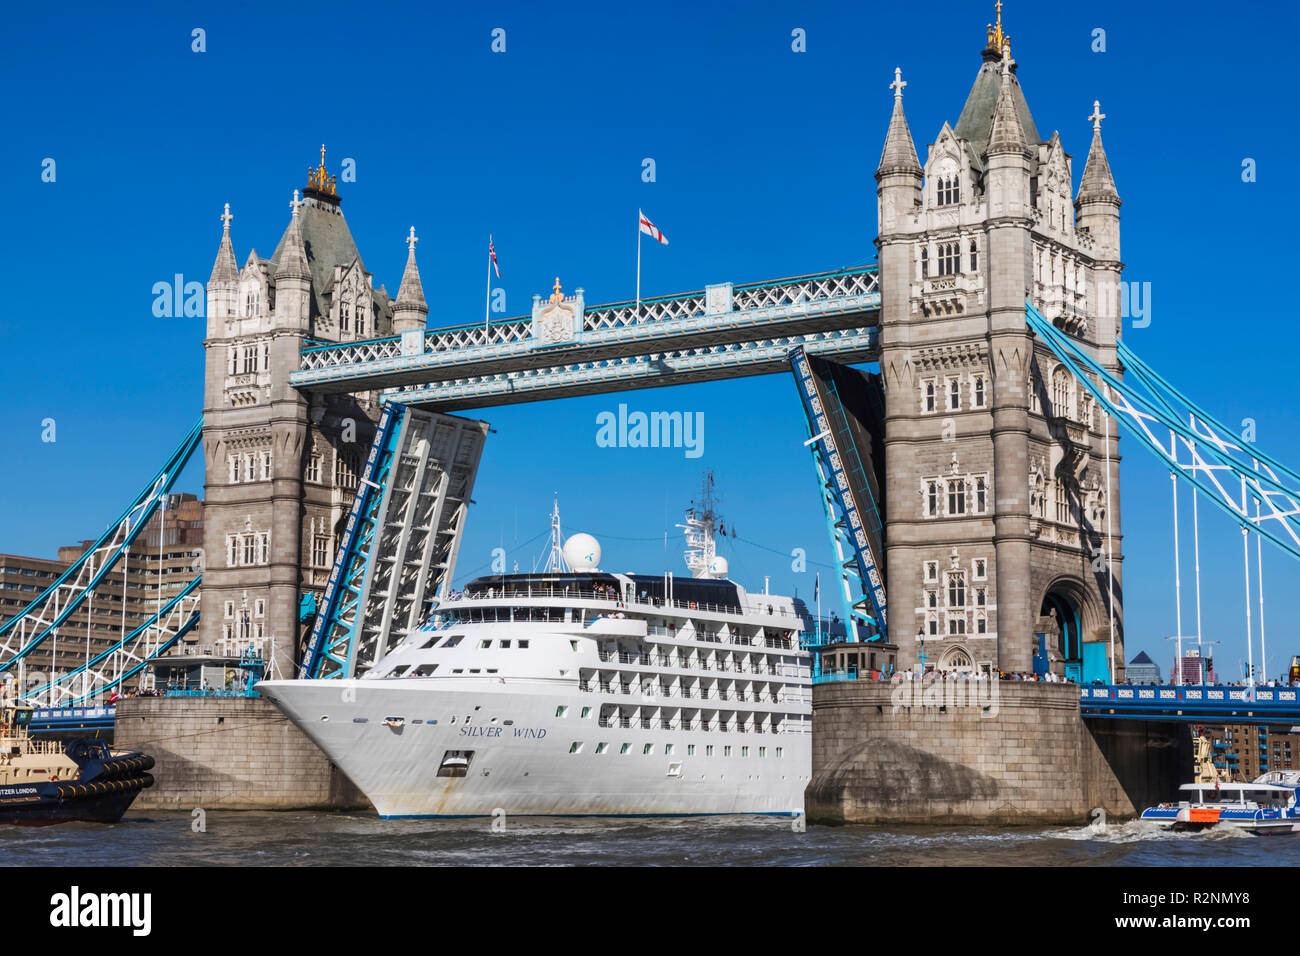 L'Angleterre, Londres, navire de croisière de luxe en passant par vent d'argent le Tower Bridge Banque D'Images